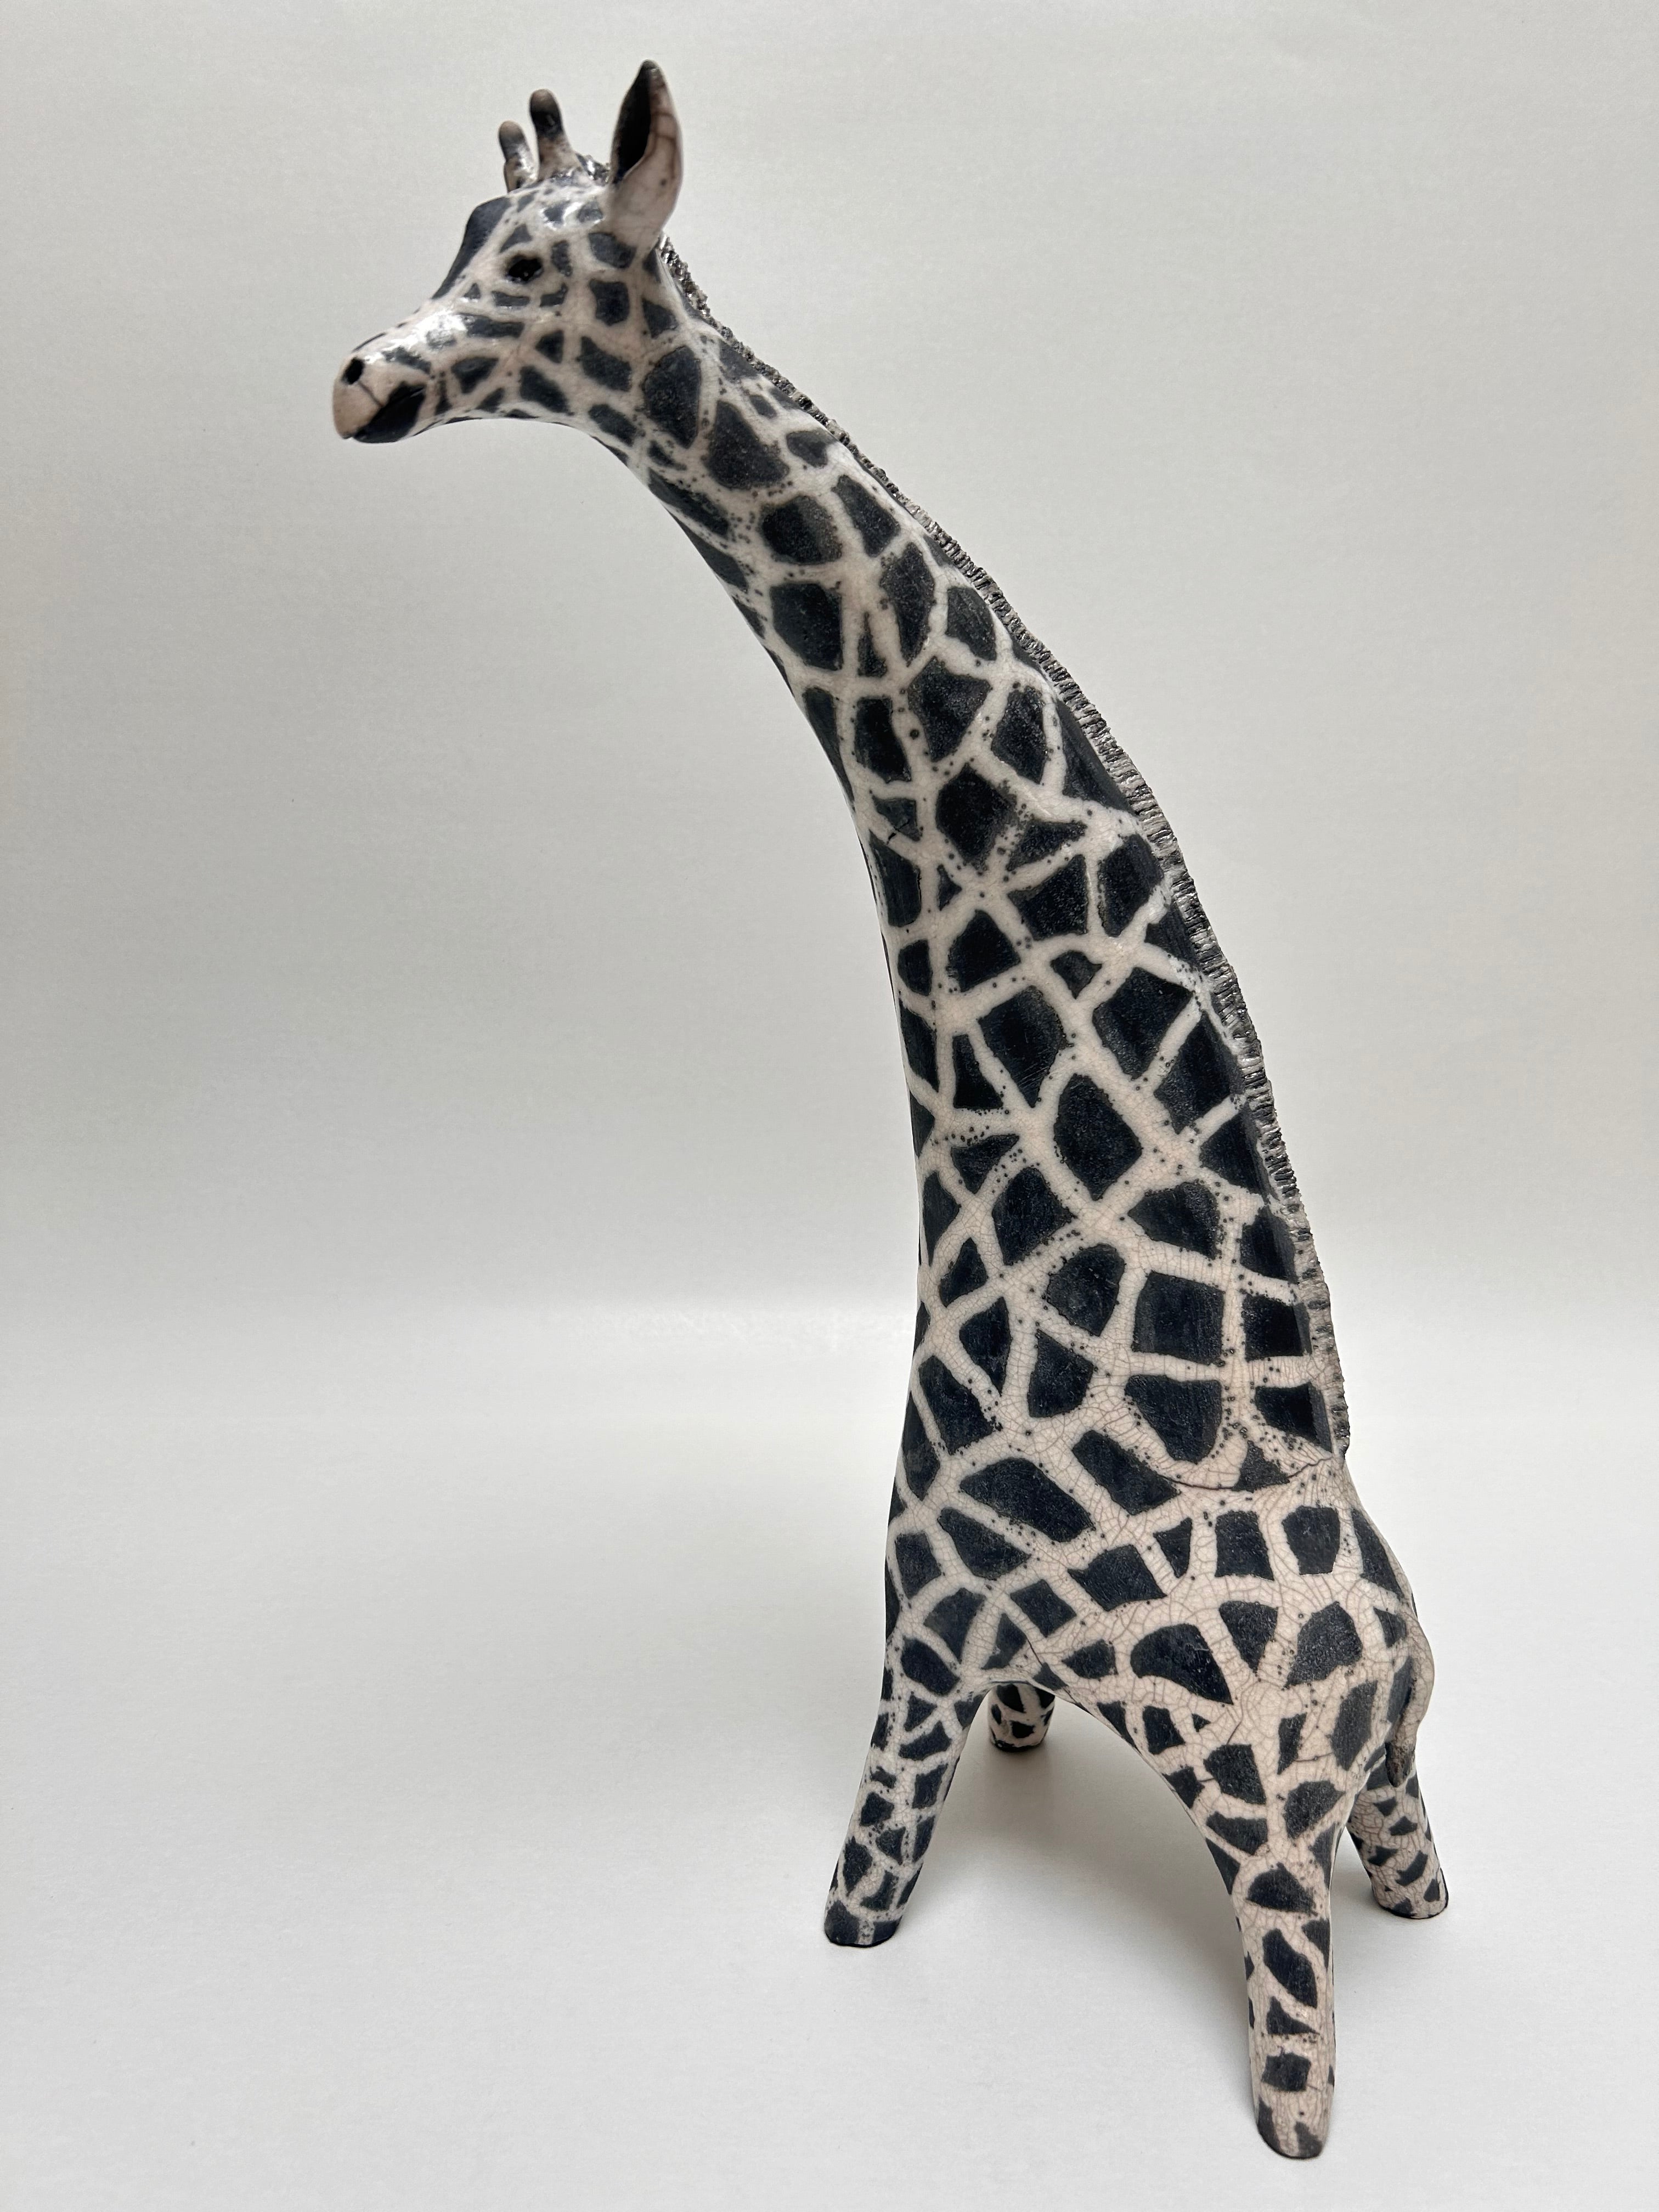 Frédérique Delcourt Girafe raku 